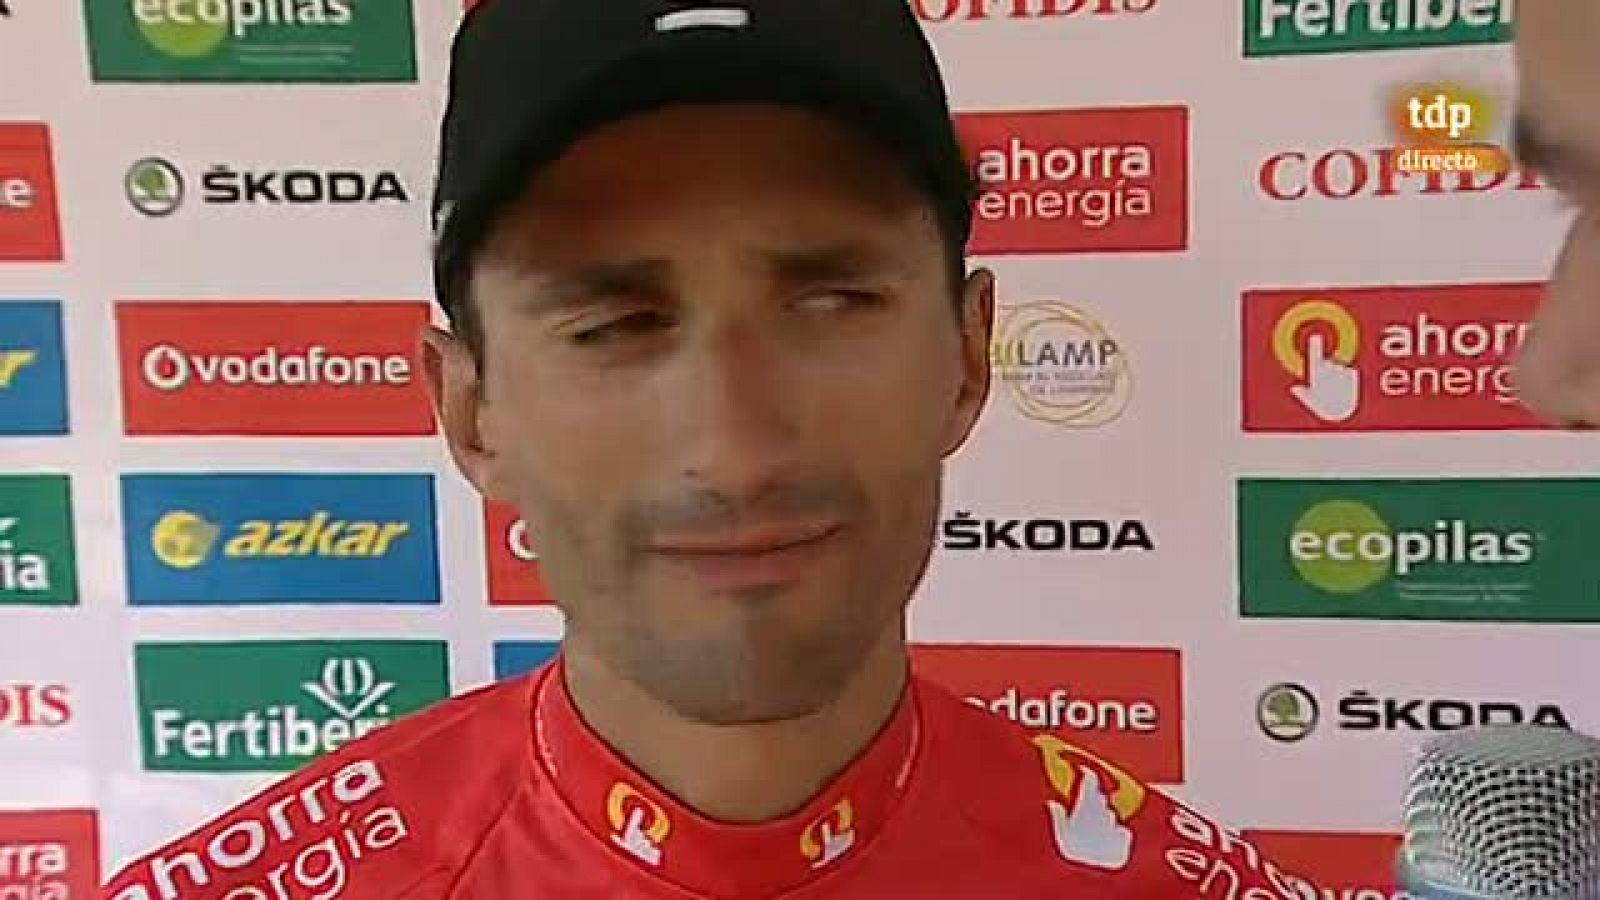 El nuevo líder de la Vuelta a España 2011, el italiano Daniele Bennati, ha confesado a los micrófonos de TVE que el maillot rojo era algo que esperaba después de la buena contrarreloj por equipos del Leopard.